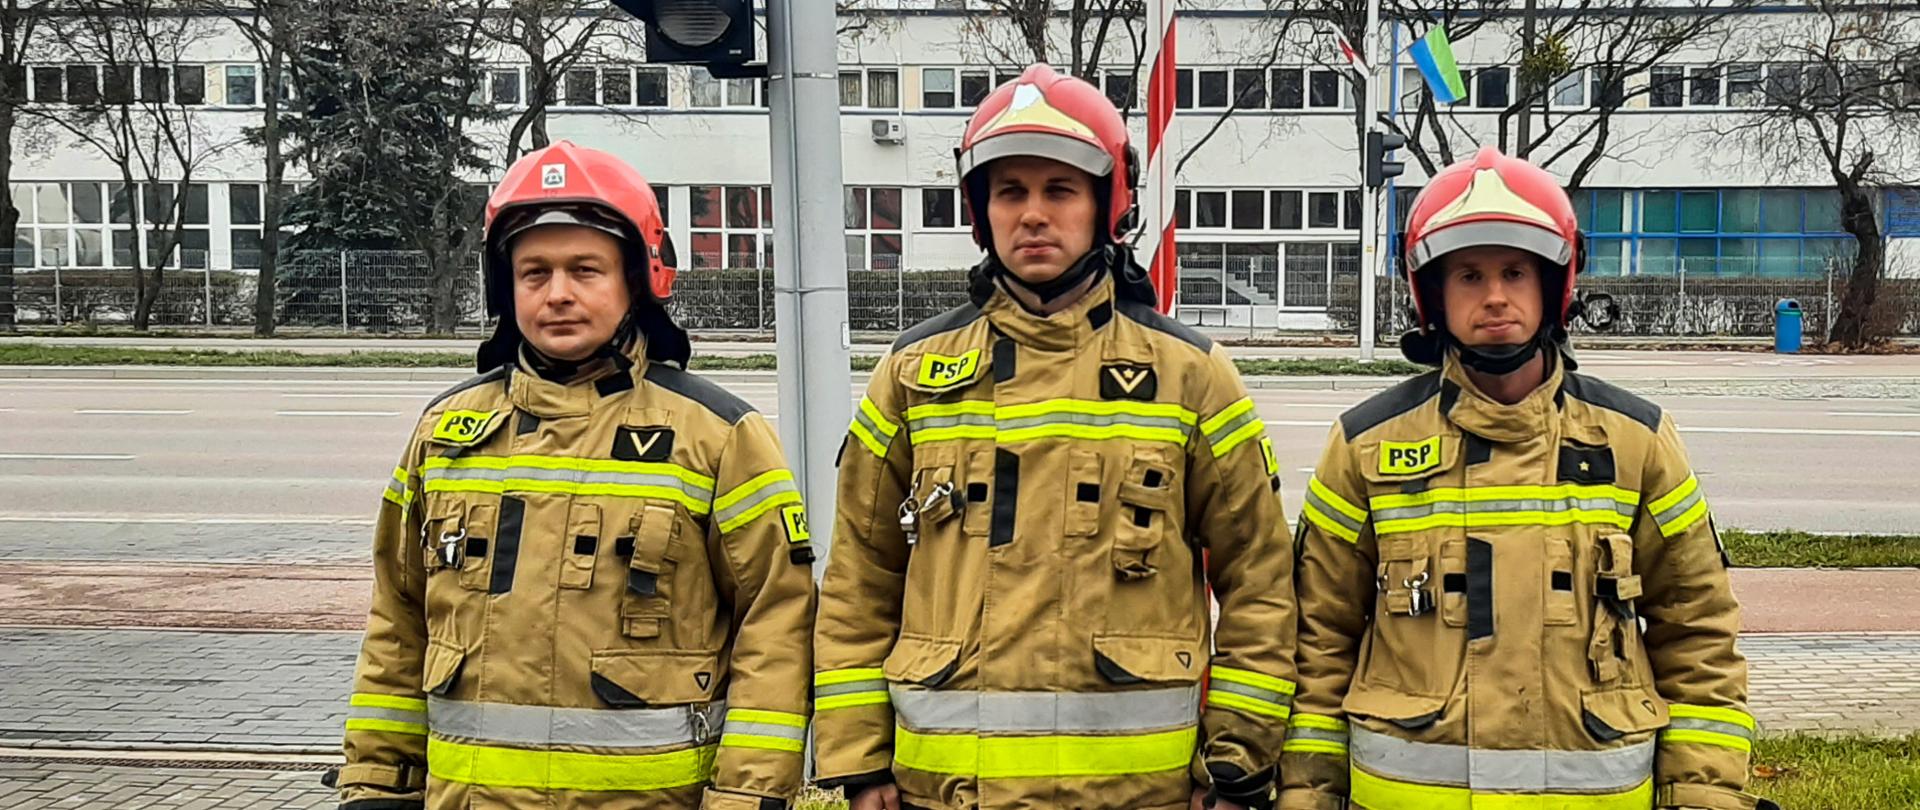 Zdjęcie przedstawia strażaków w ubraniach specjalnych po podniesieniu flagi państwowej na maszt